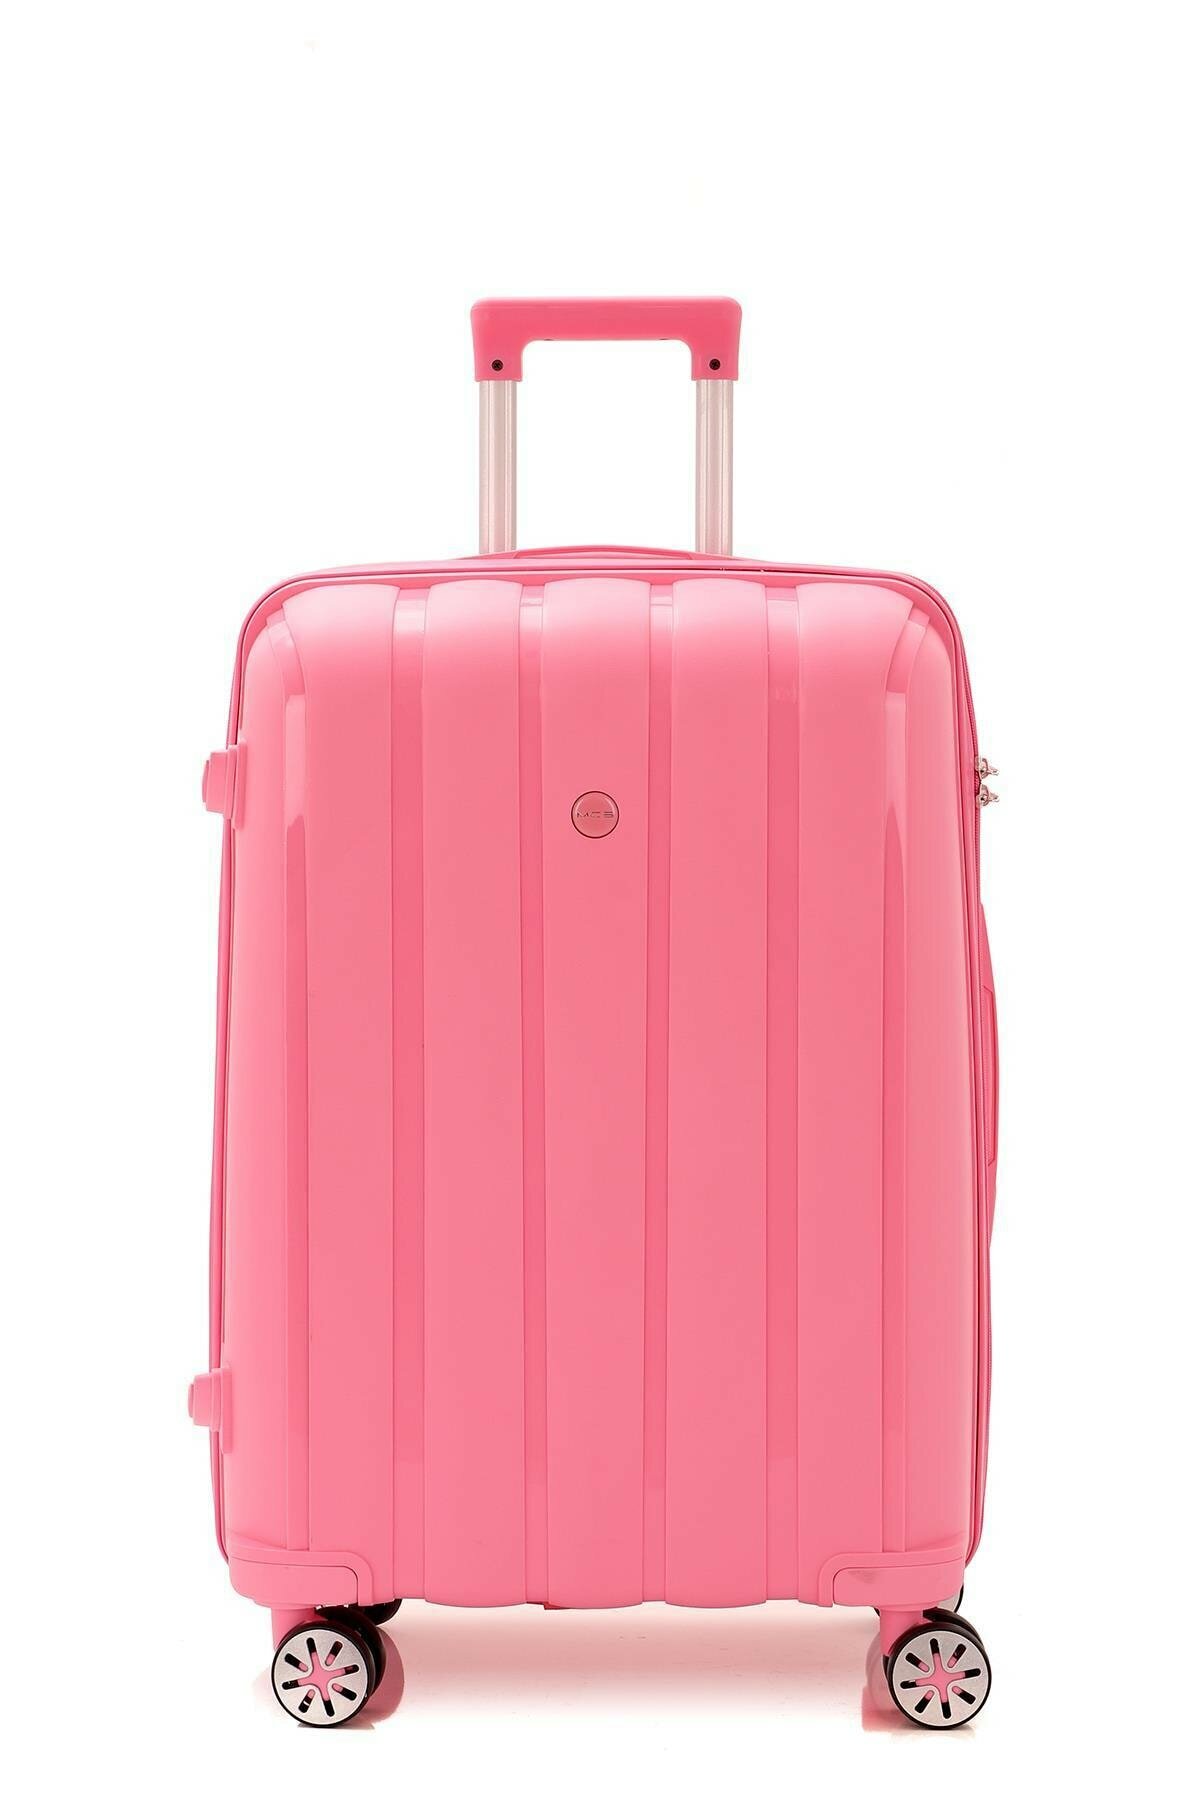 Средний чемодан из полипропилена MCS V305 M PINK! Для 18 кг! - 1